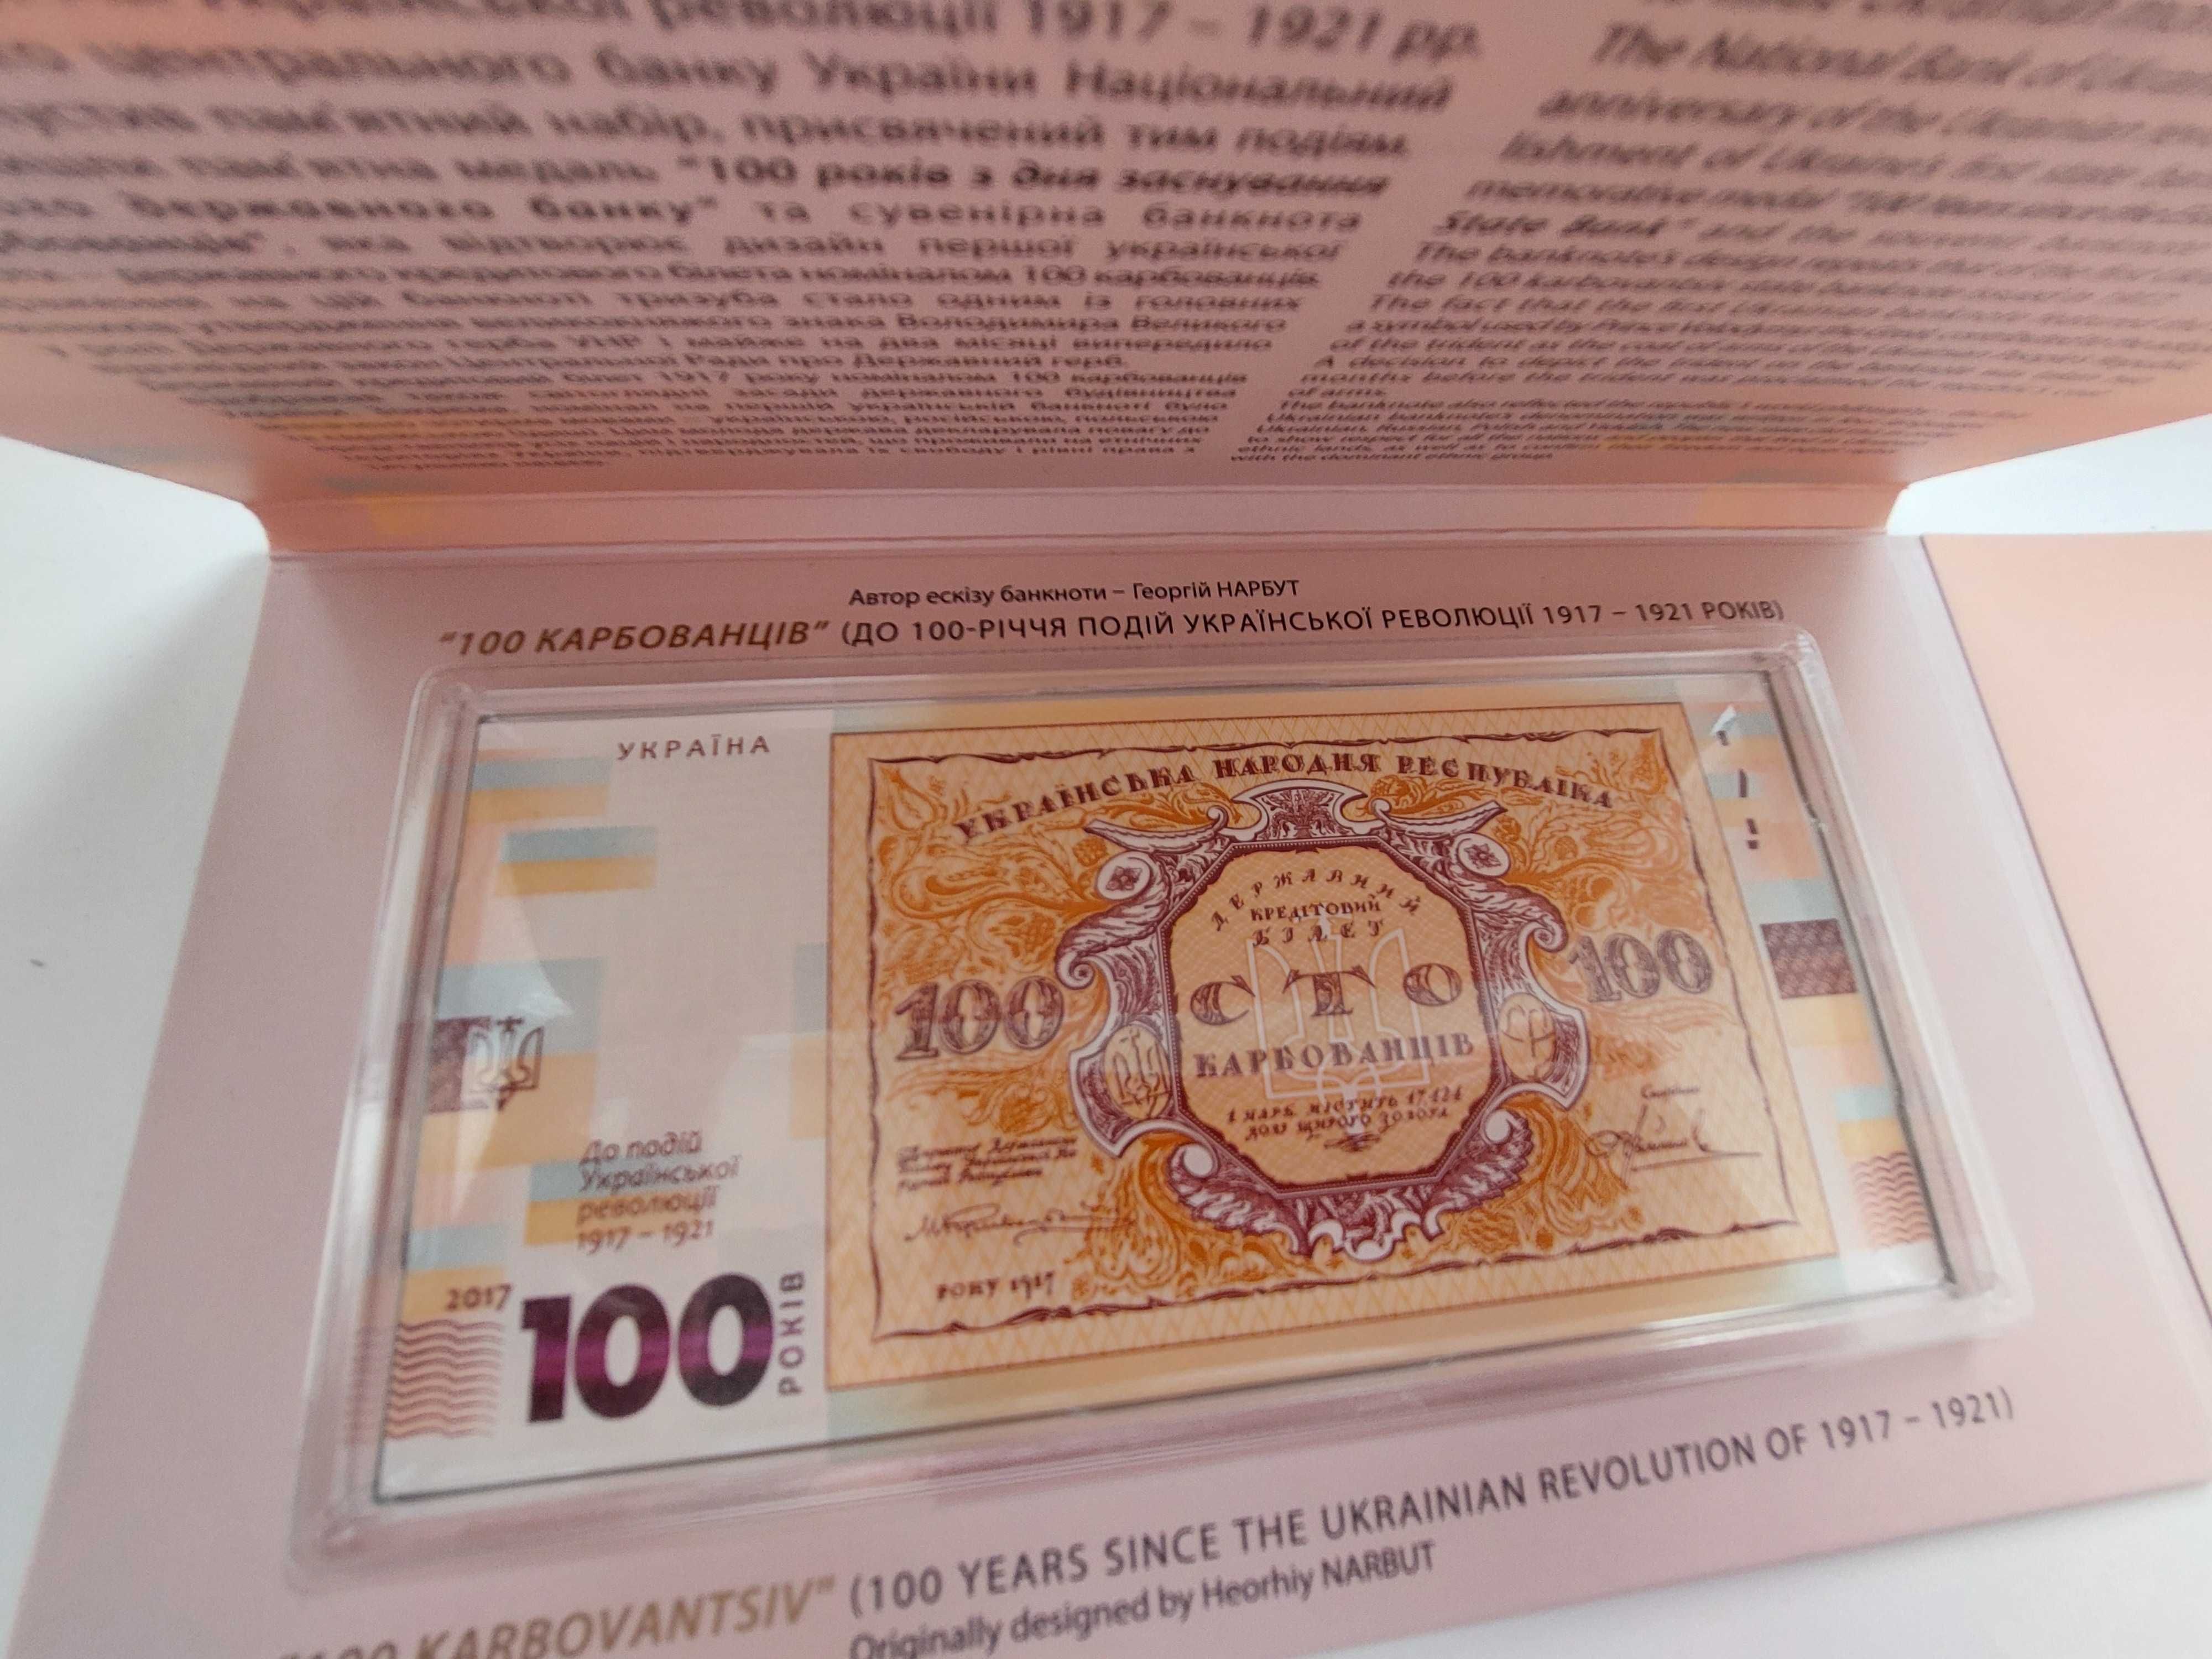 Набір  `До 100-річчя подій Української революції 1917 - 1921 років`